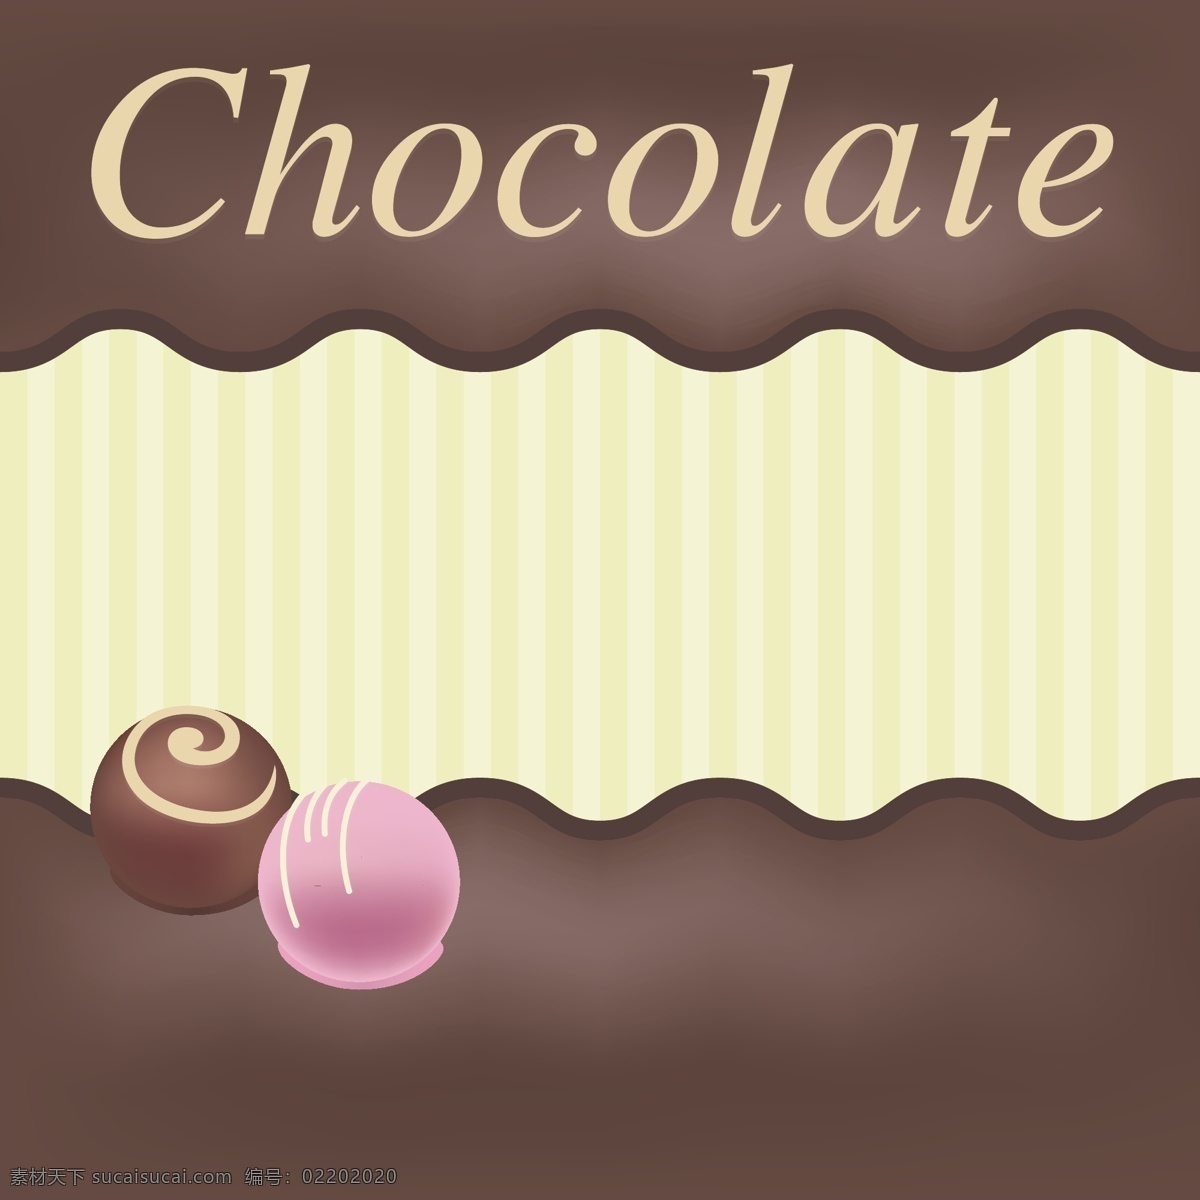 矢量 巧克力 背景 巧克力背景 背景素材 矢量巧克力 手绘糖果 糖果 手绘食物 手绘美食 糖 甜品 手绘甜点 矢量素材 巧克力球 情人节 甜蜜